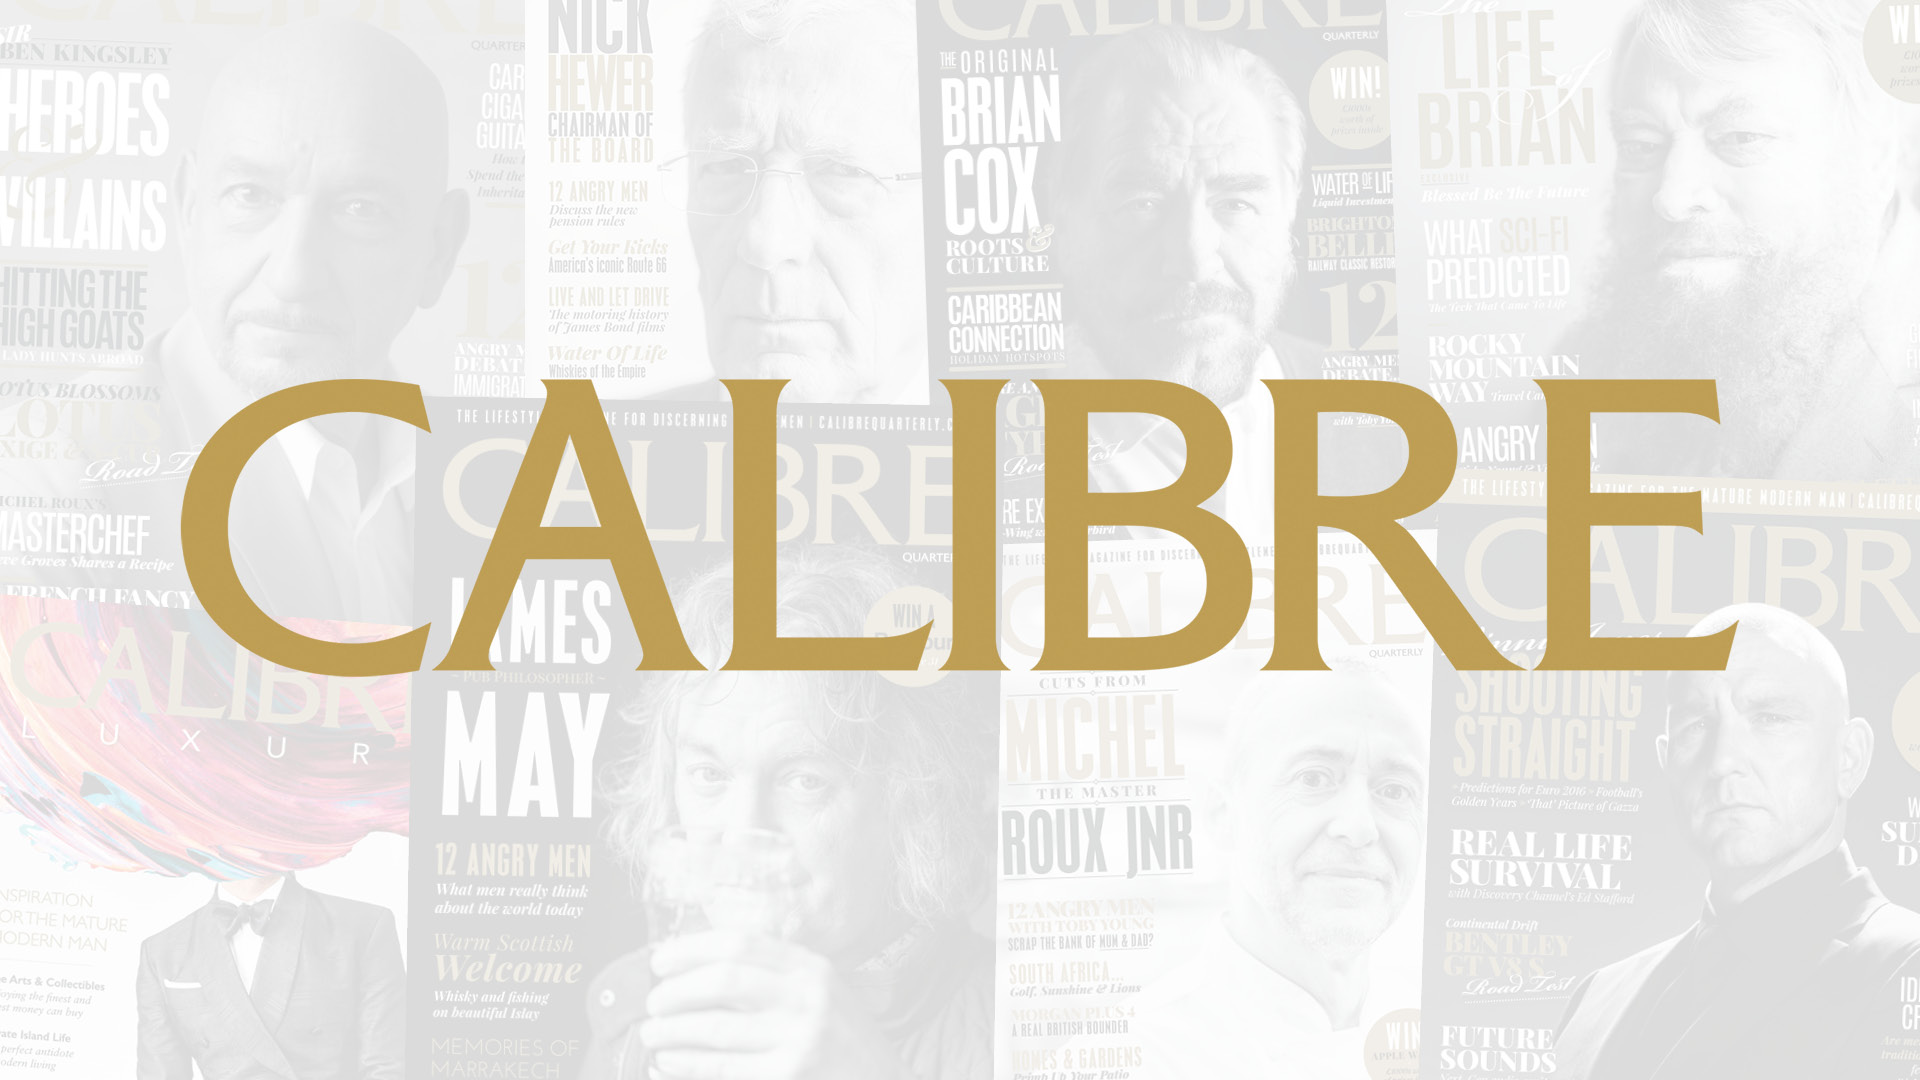 International Media acquires CALIBRE magazine